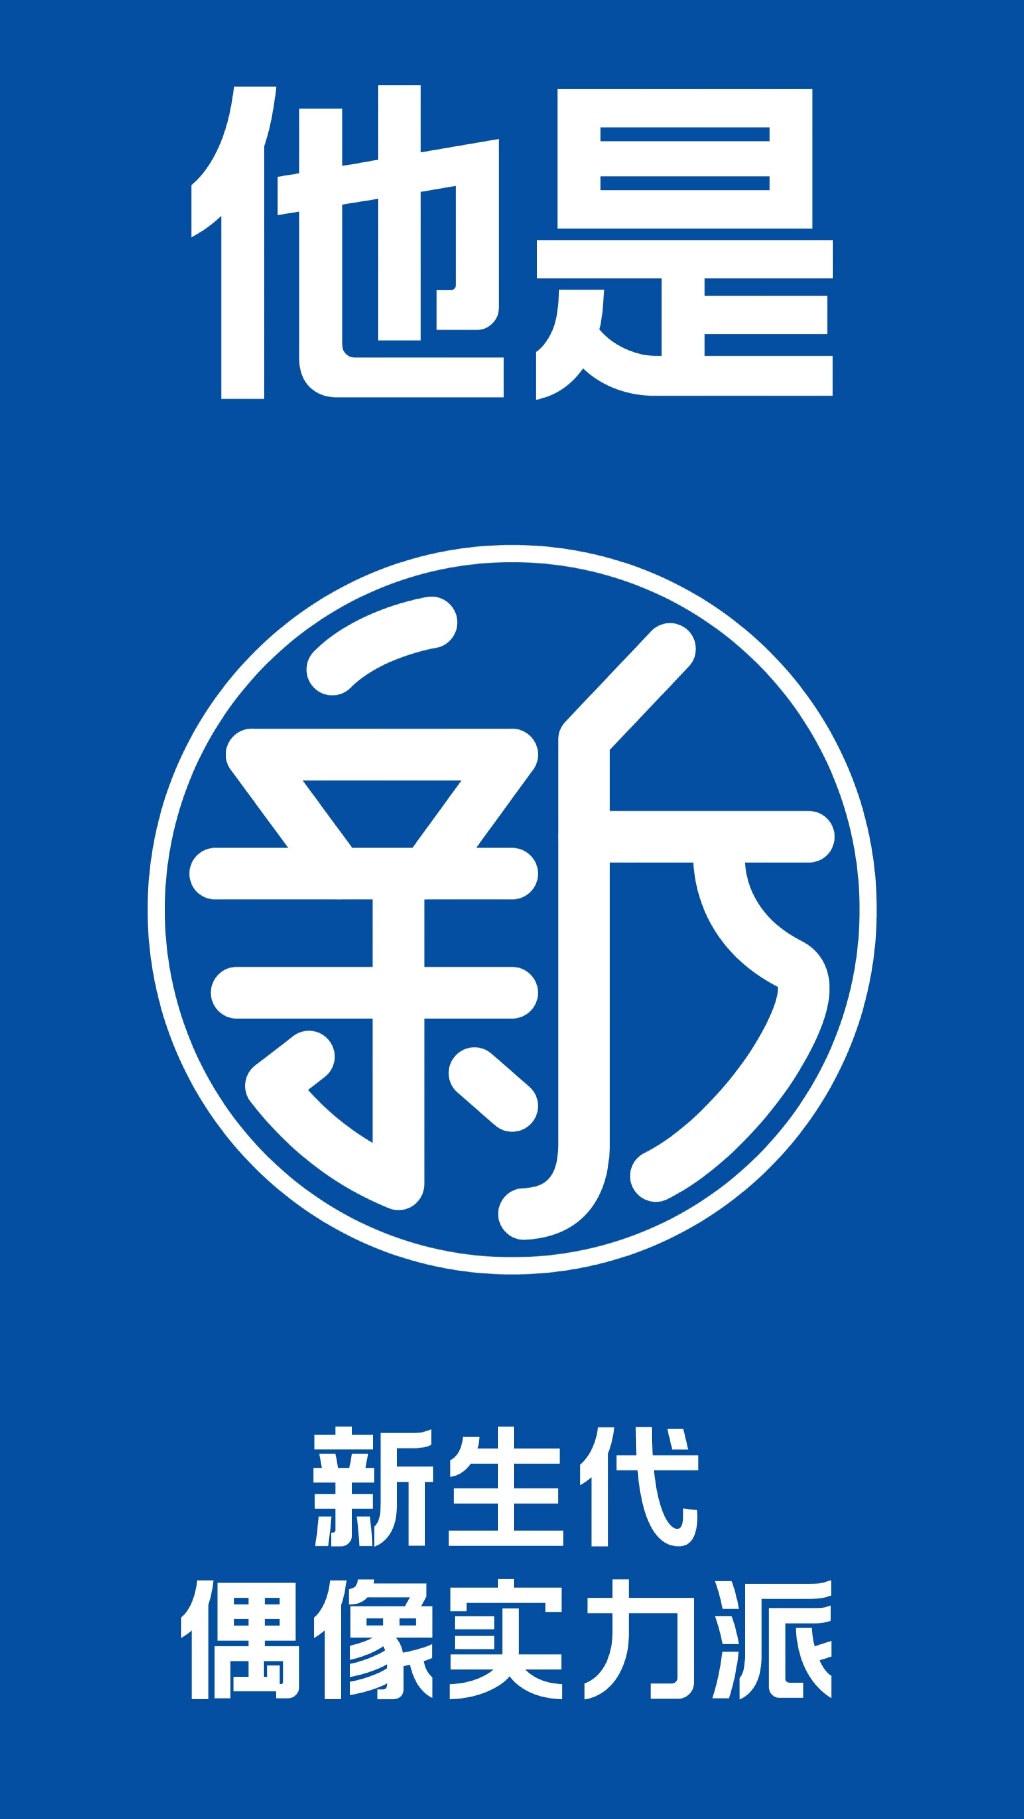 海飞丝logo的设计含义图片